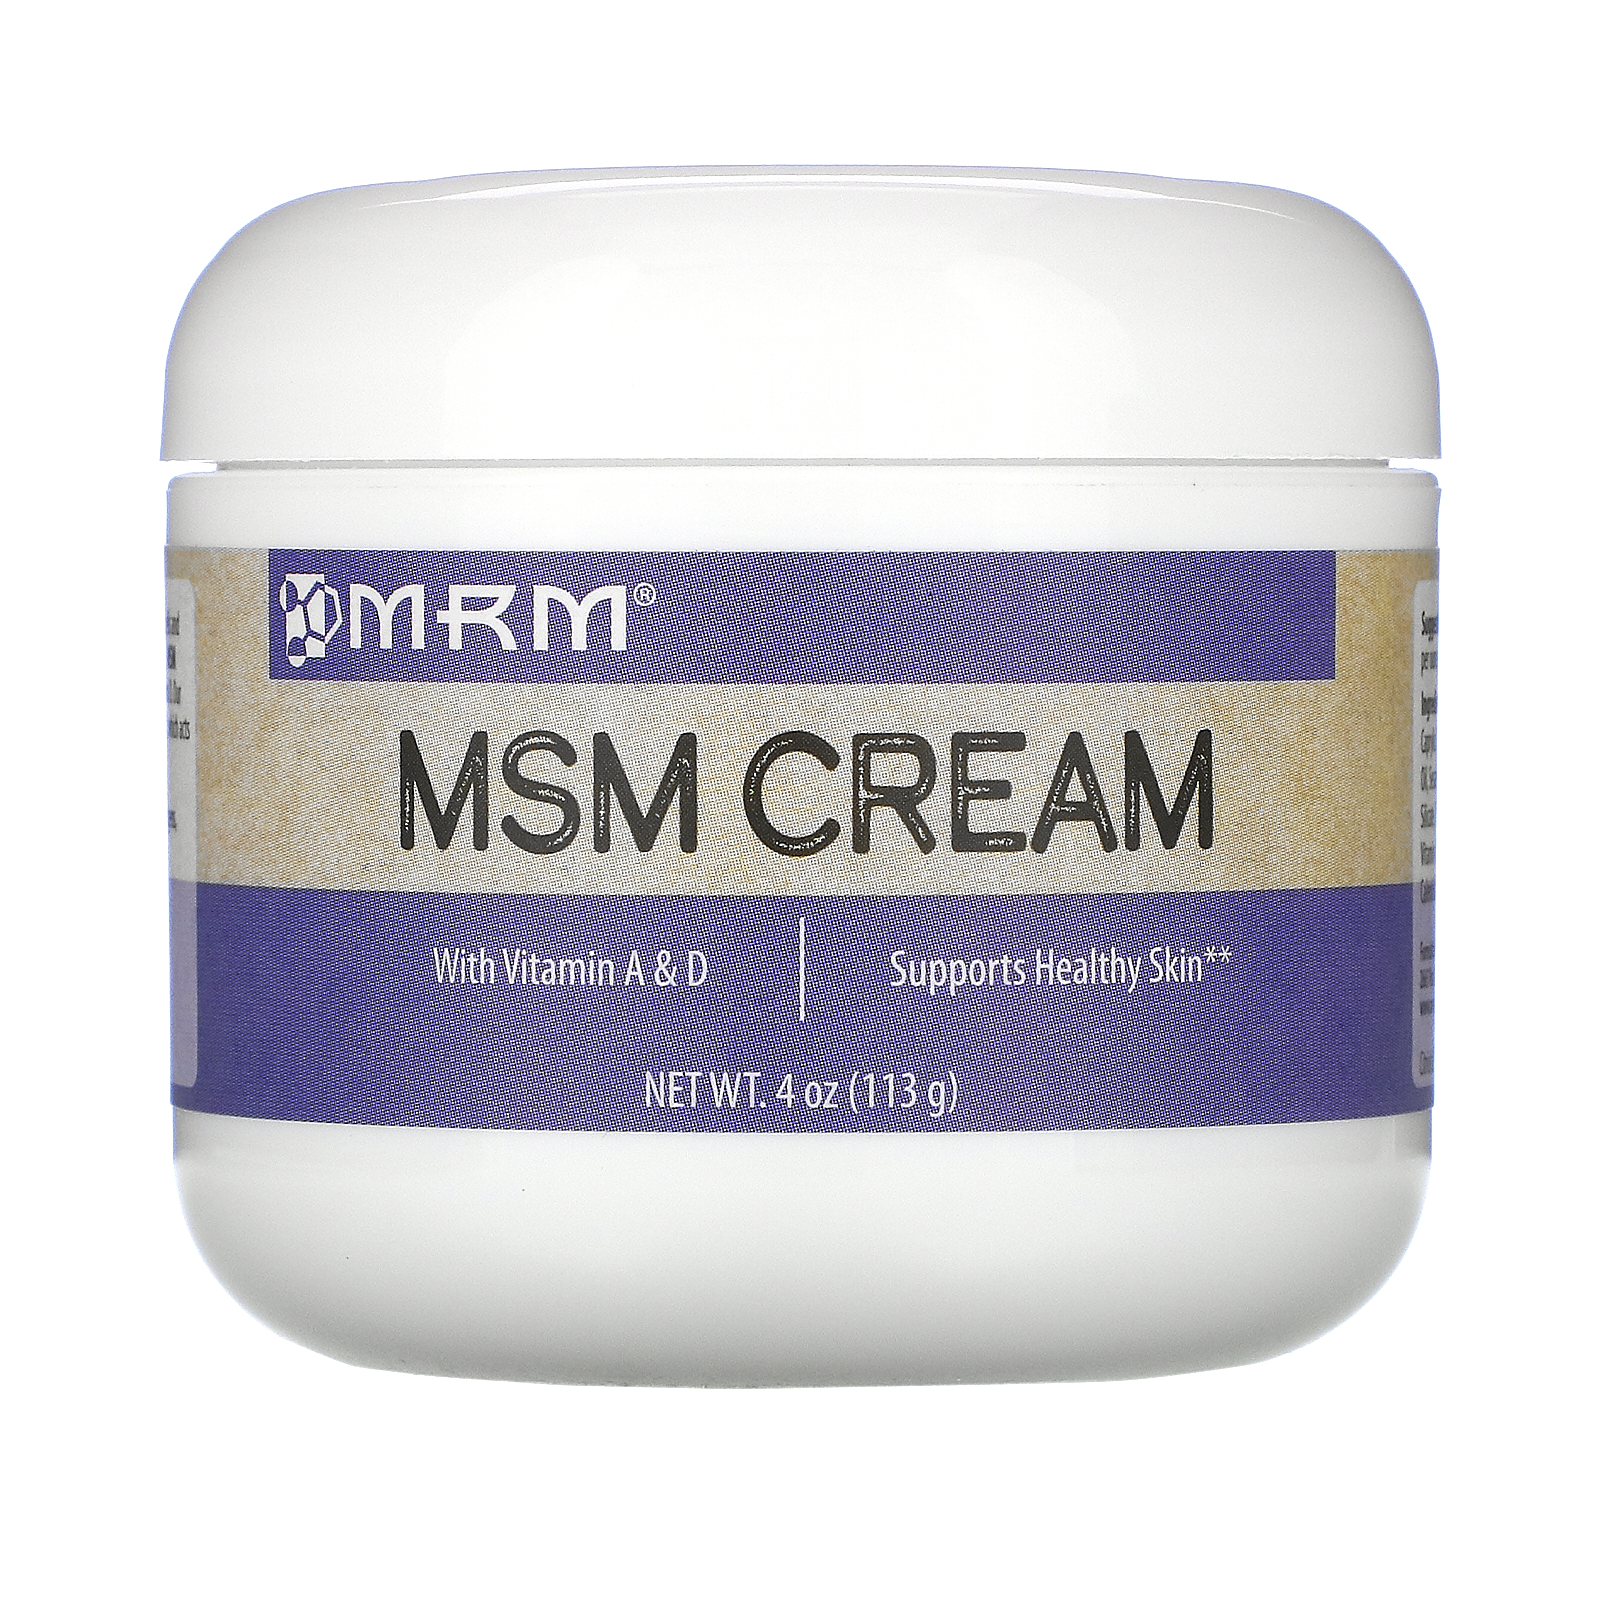 Msm facial cream